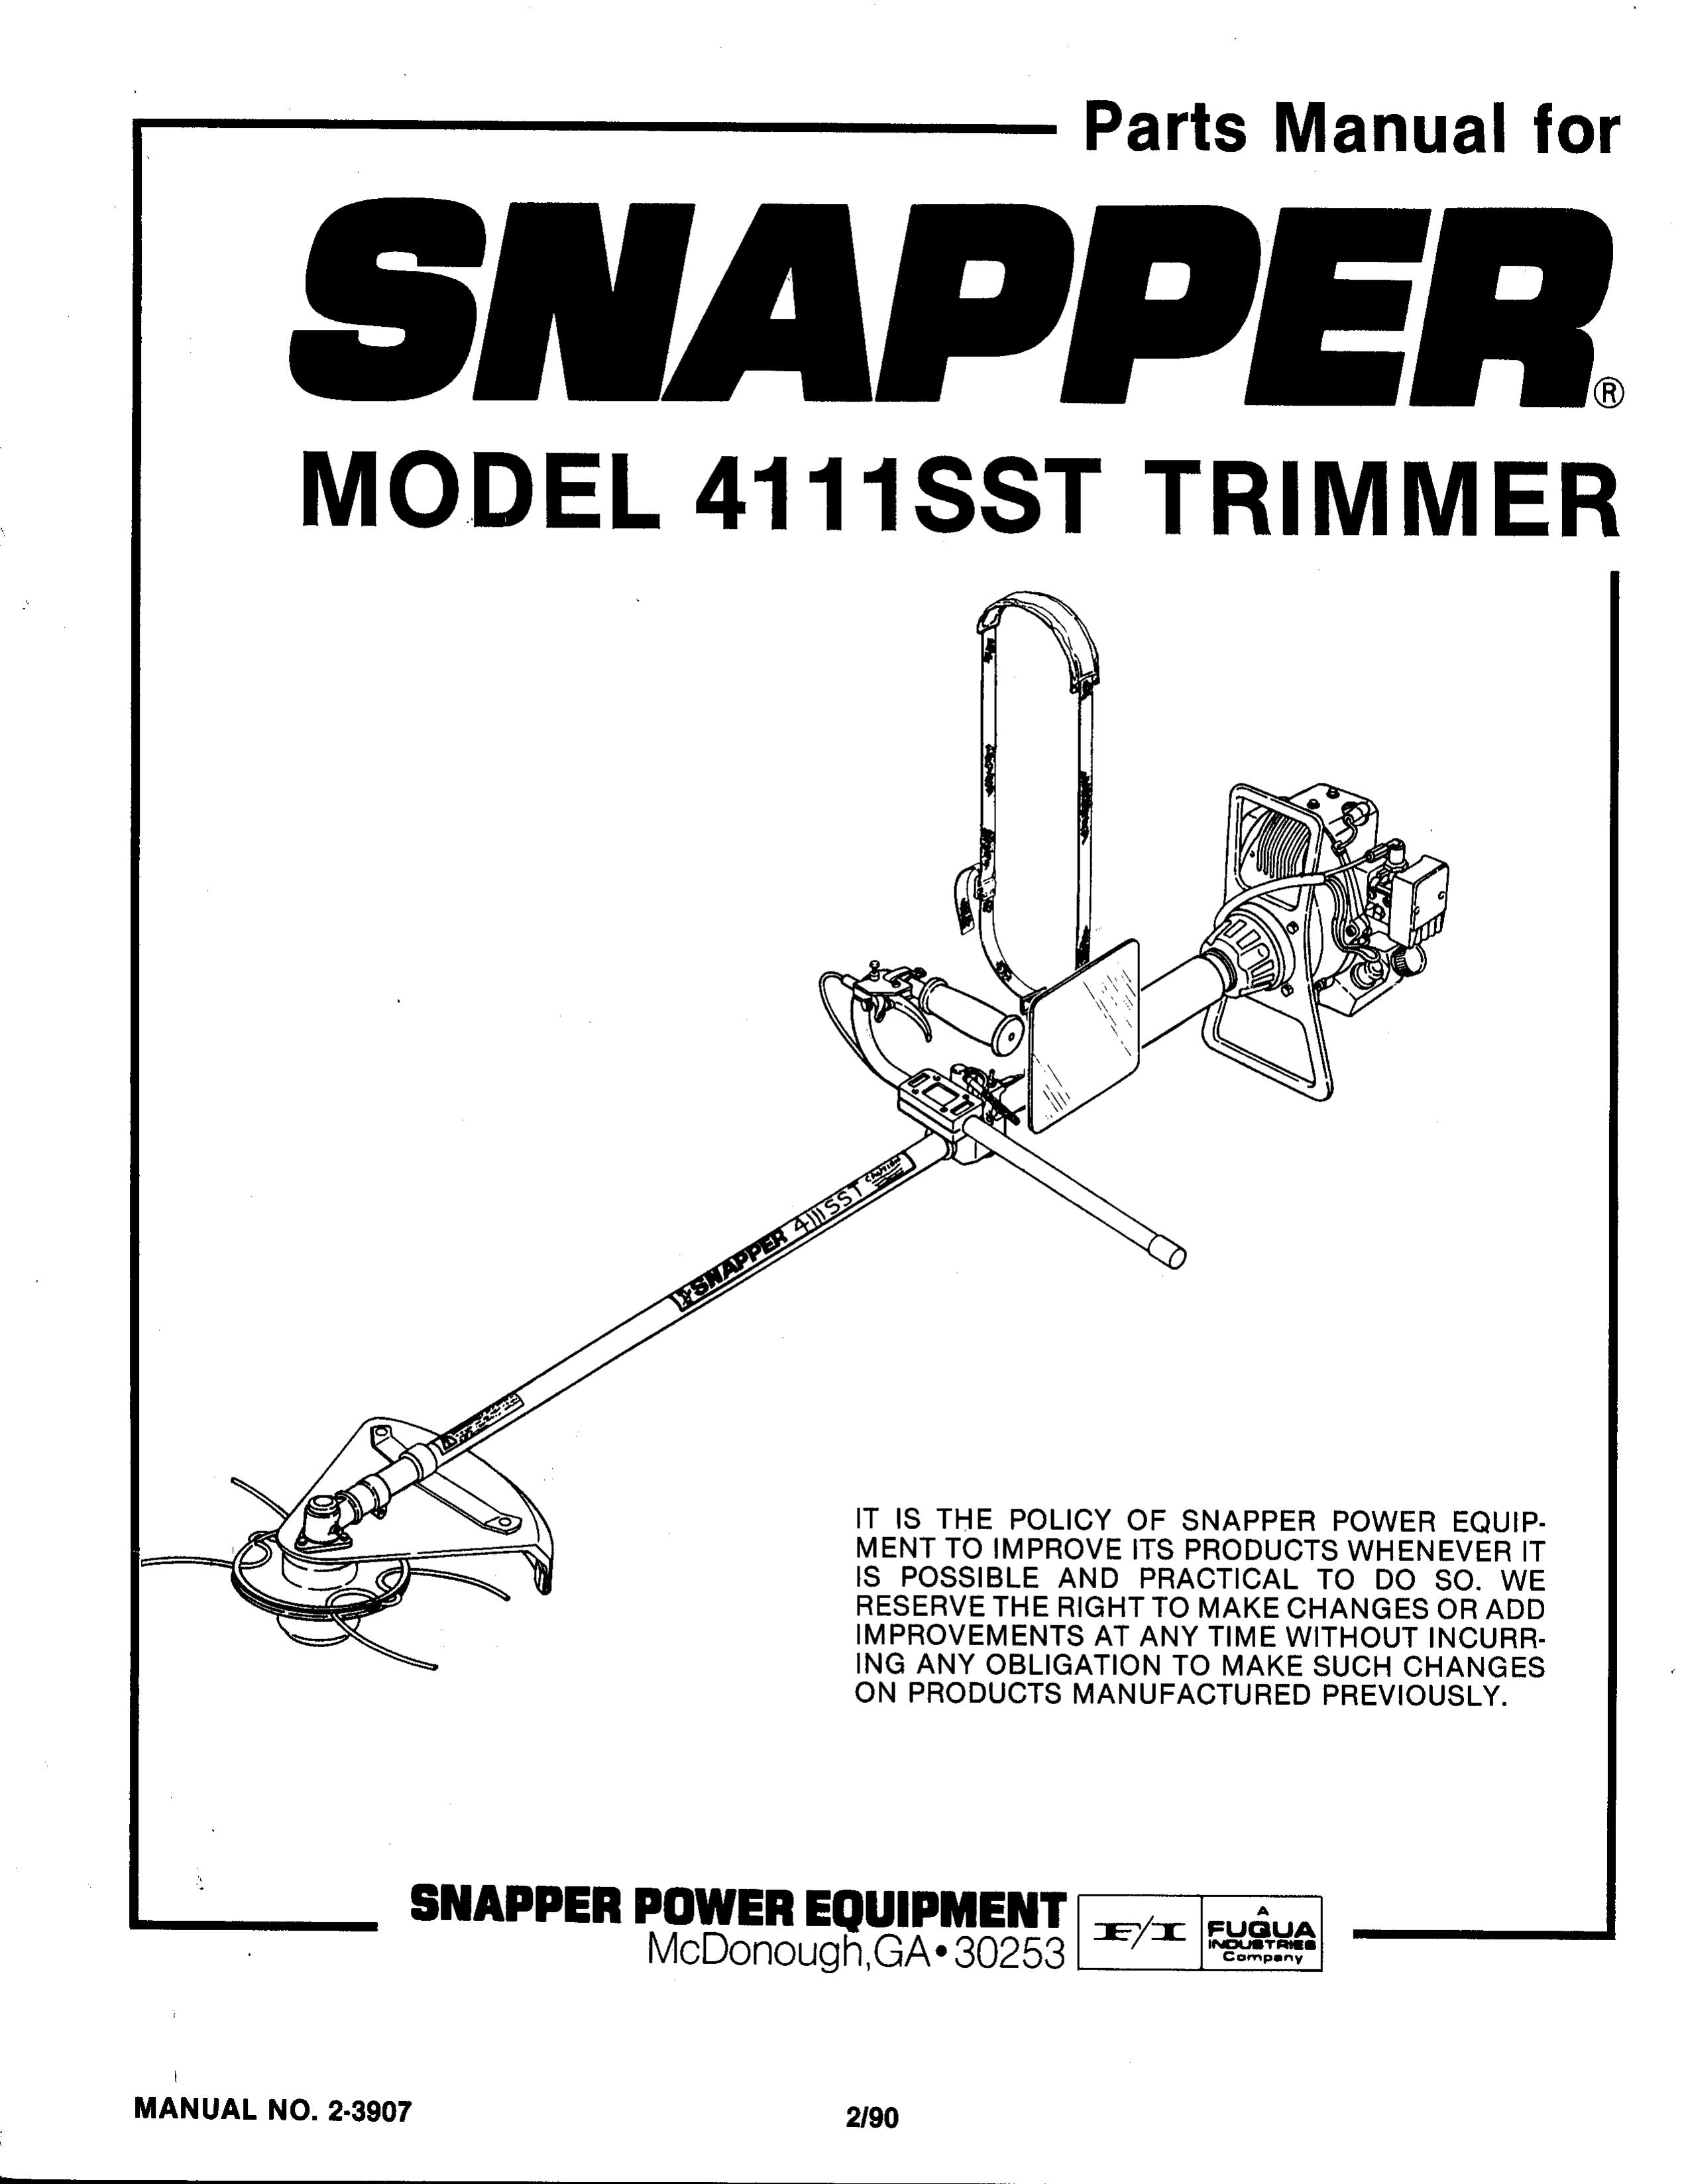 Snapper 4111SST Trimmer User Manual